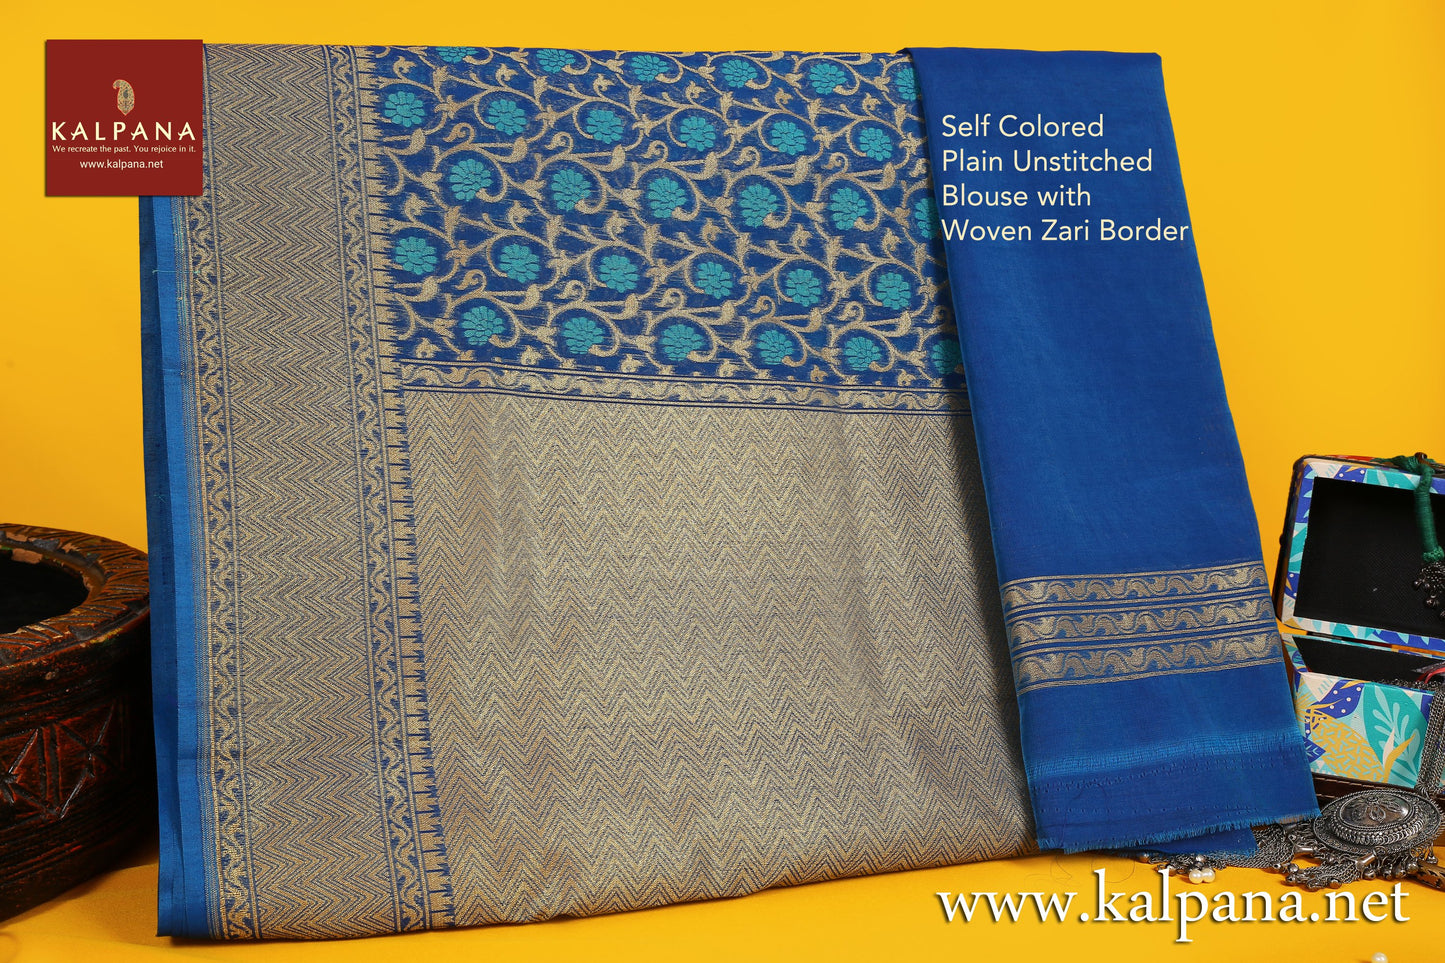 Banarasi Woven Blended Cotton Saree